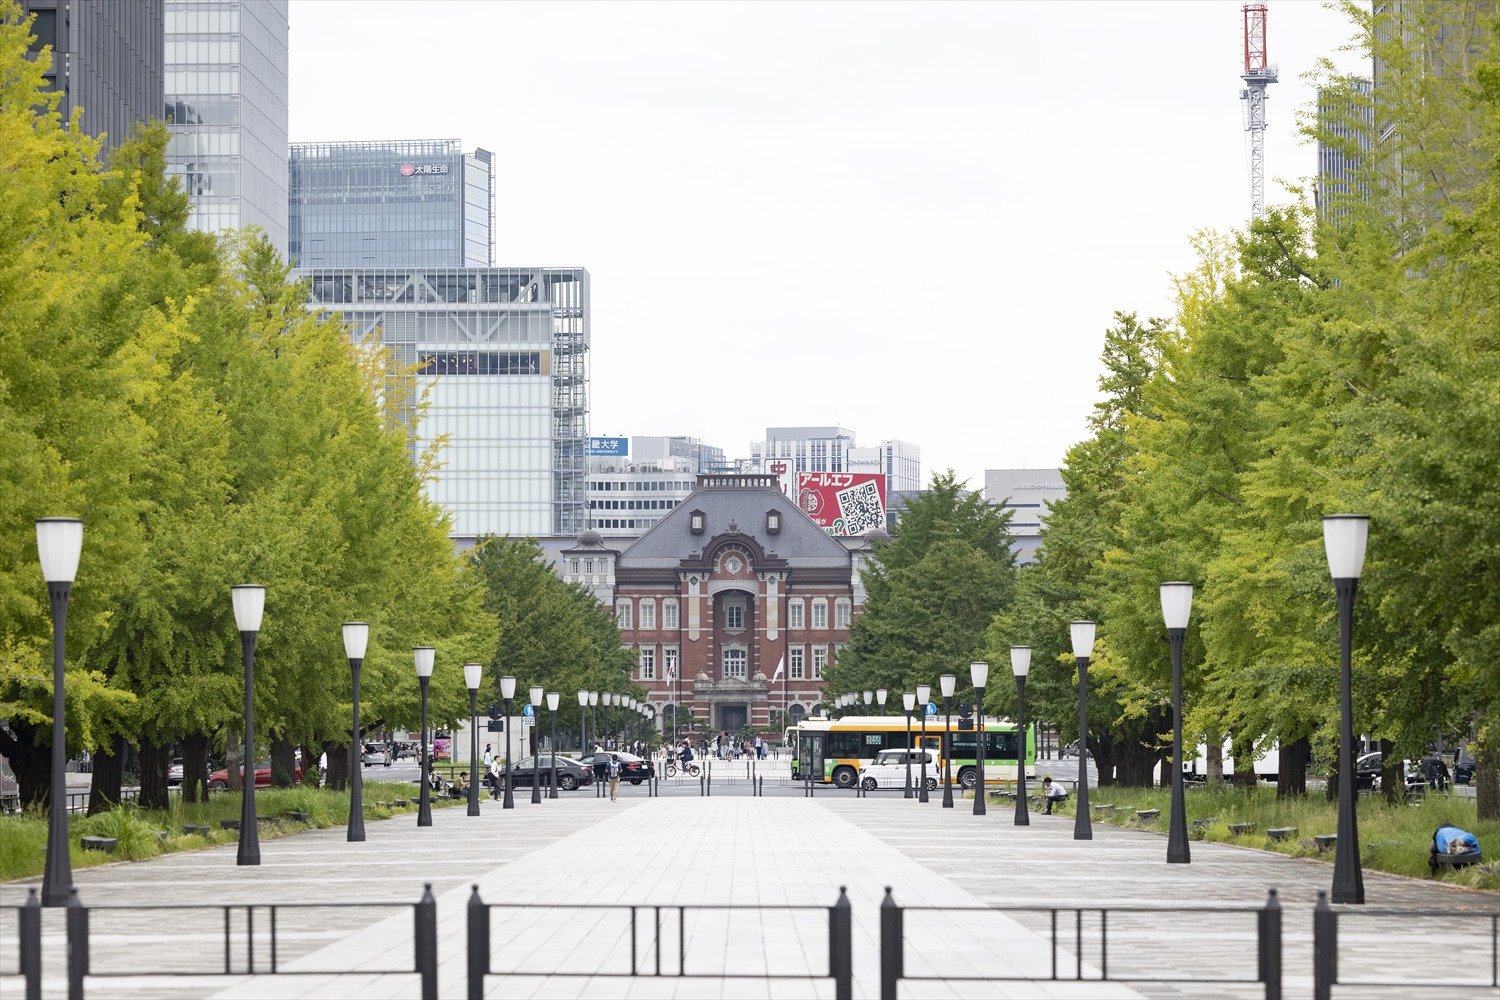 「東京駅が真っ正面というお気に入りスポットです」と仲田さん。